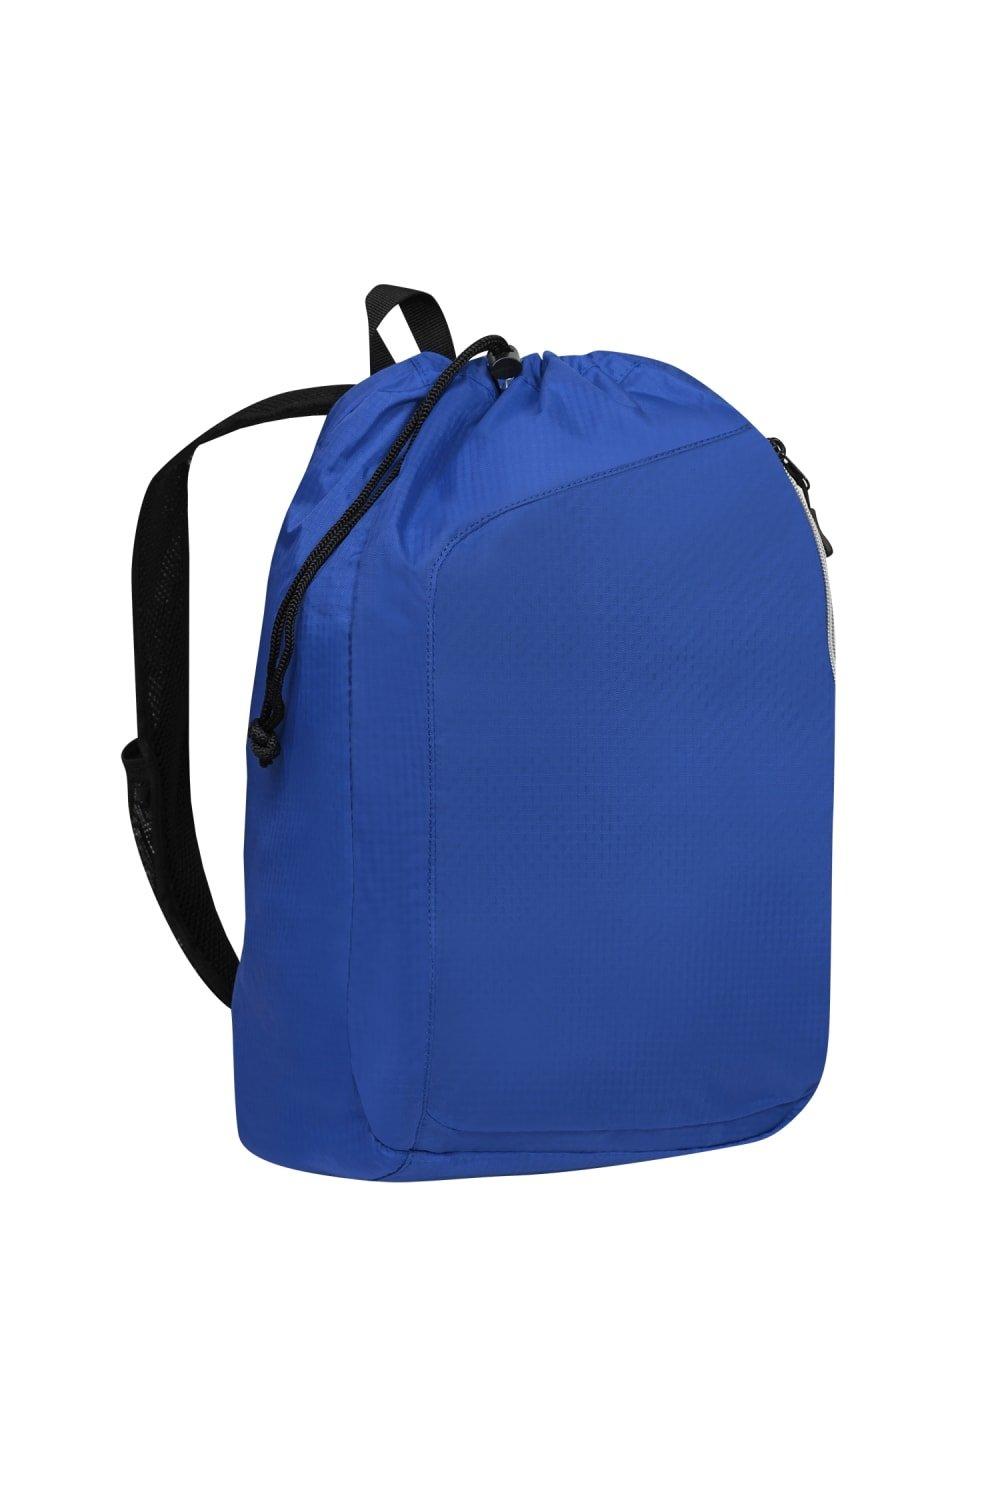 Рюкзак Endurance Sonic с одним ремнем (2 шт.) Ogio, синий врезка в куб под кламп 2 дюйма